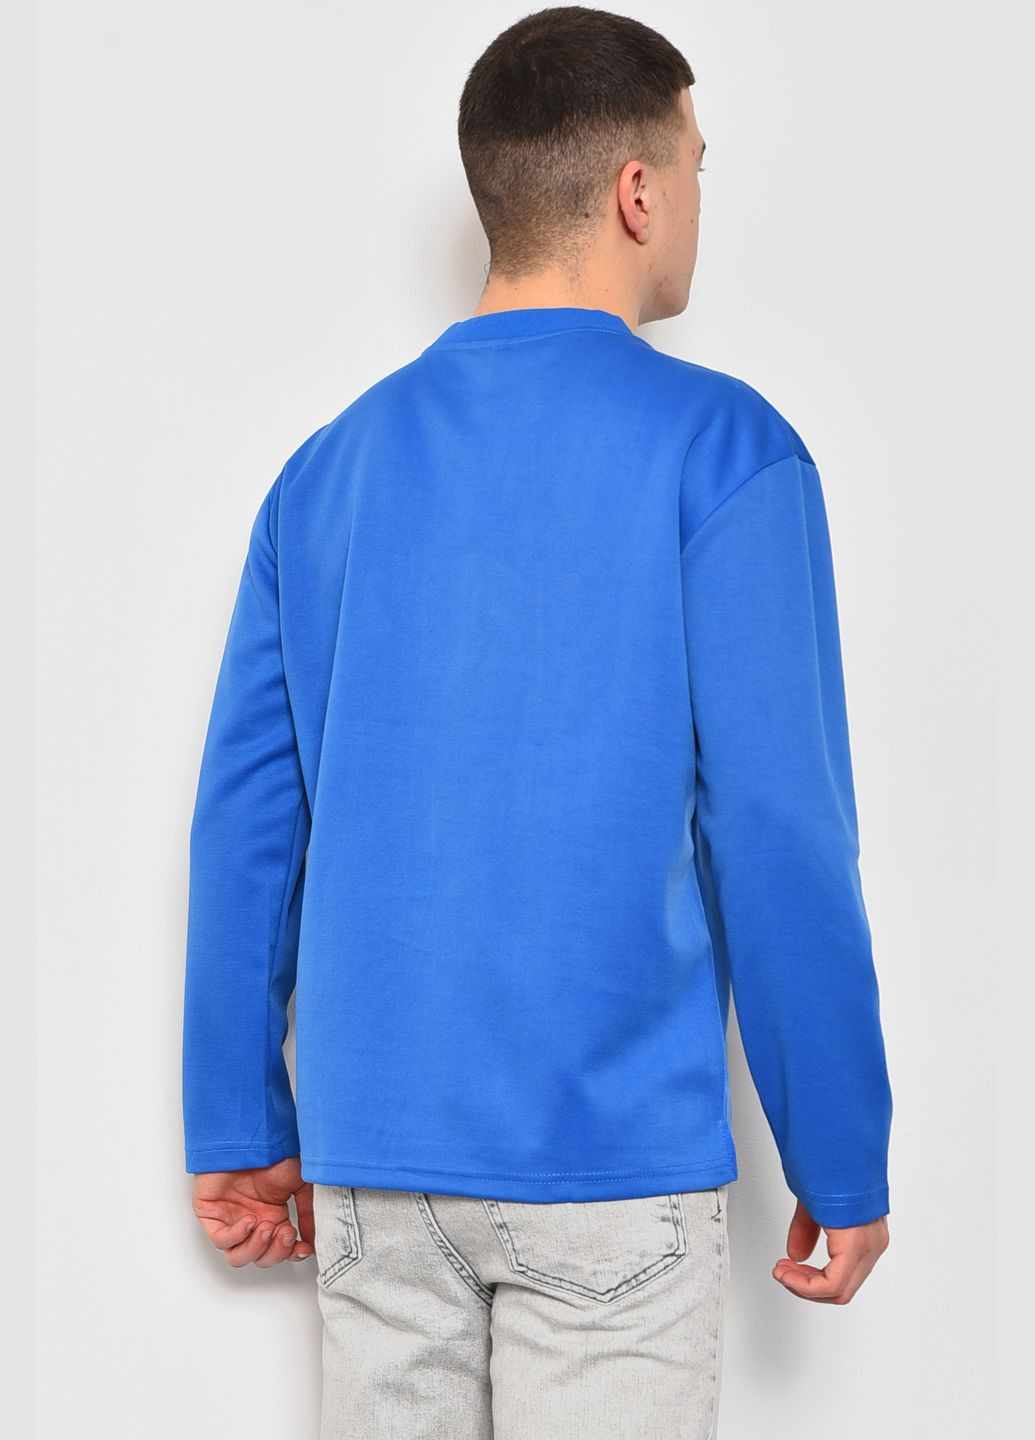 Свитшот мужской синего цвета с надписью Let's Shop - Свободный крой надпись синий кэжуал полиэстер - (281352782)